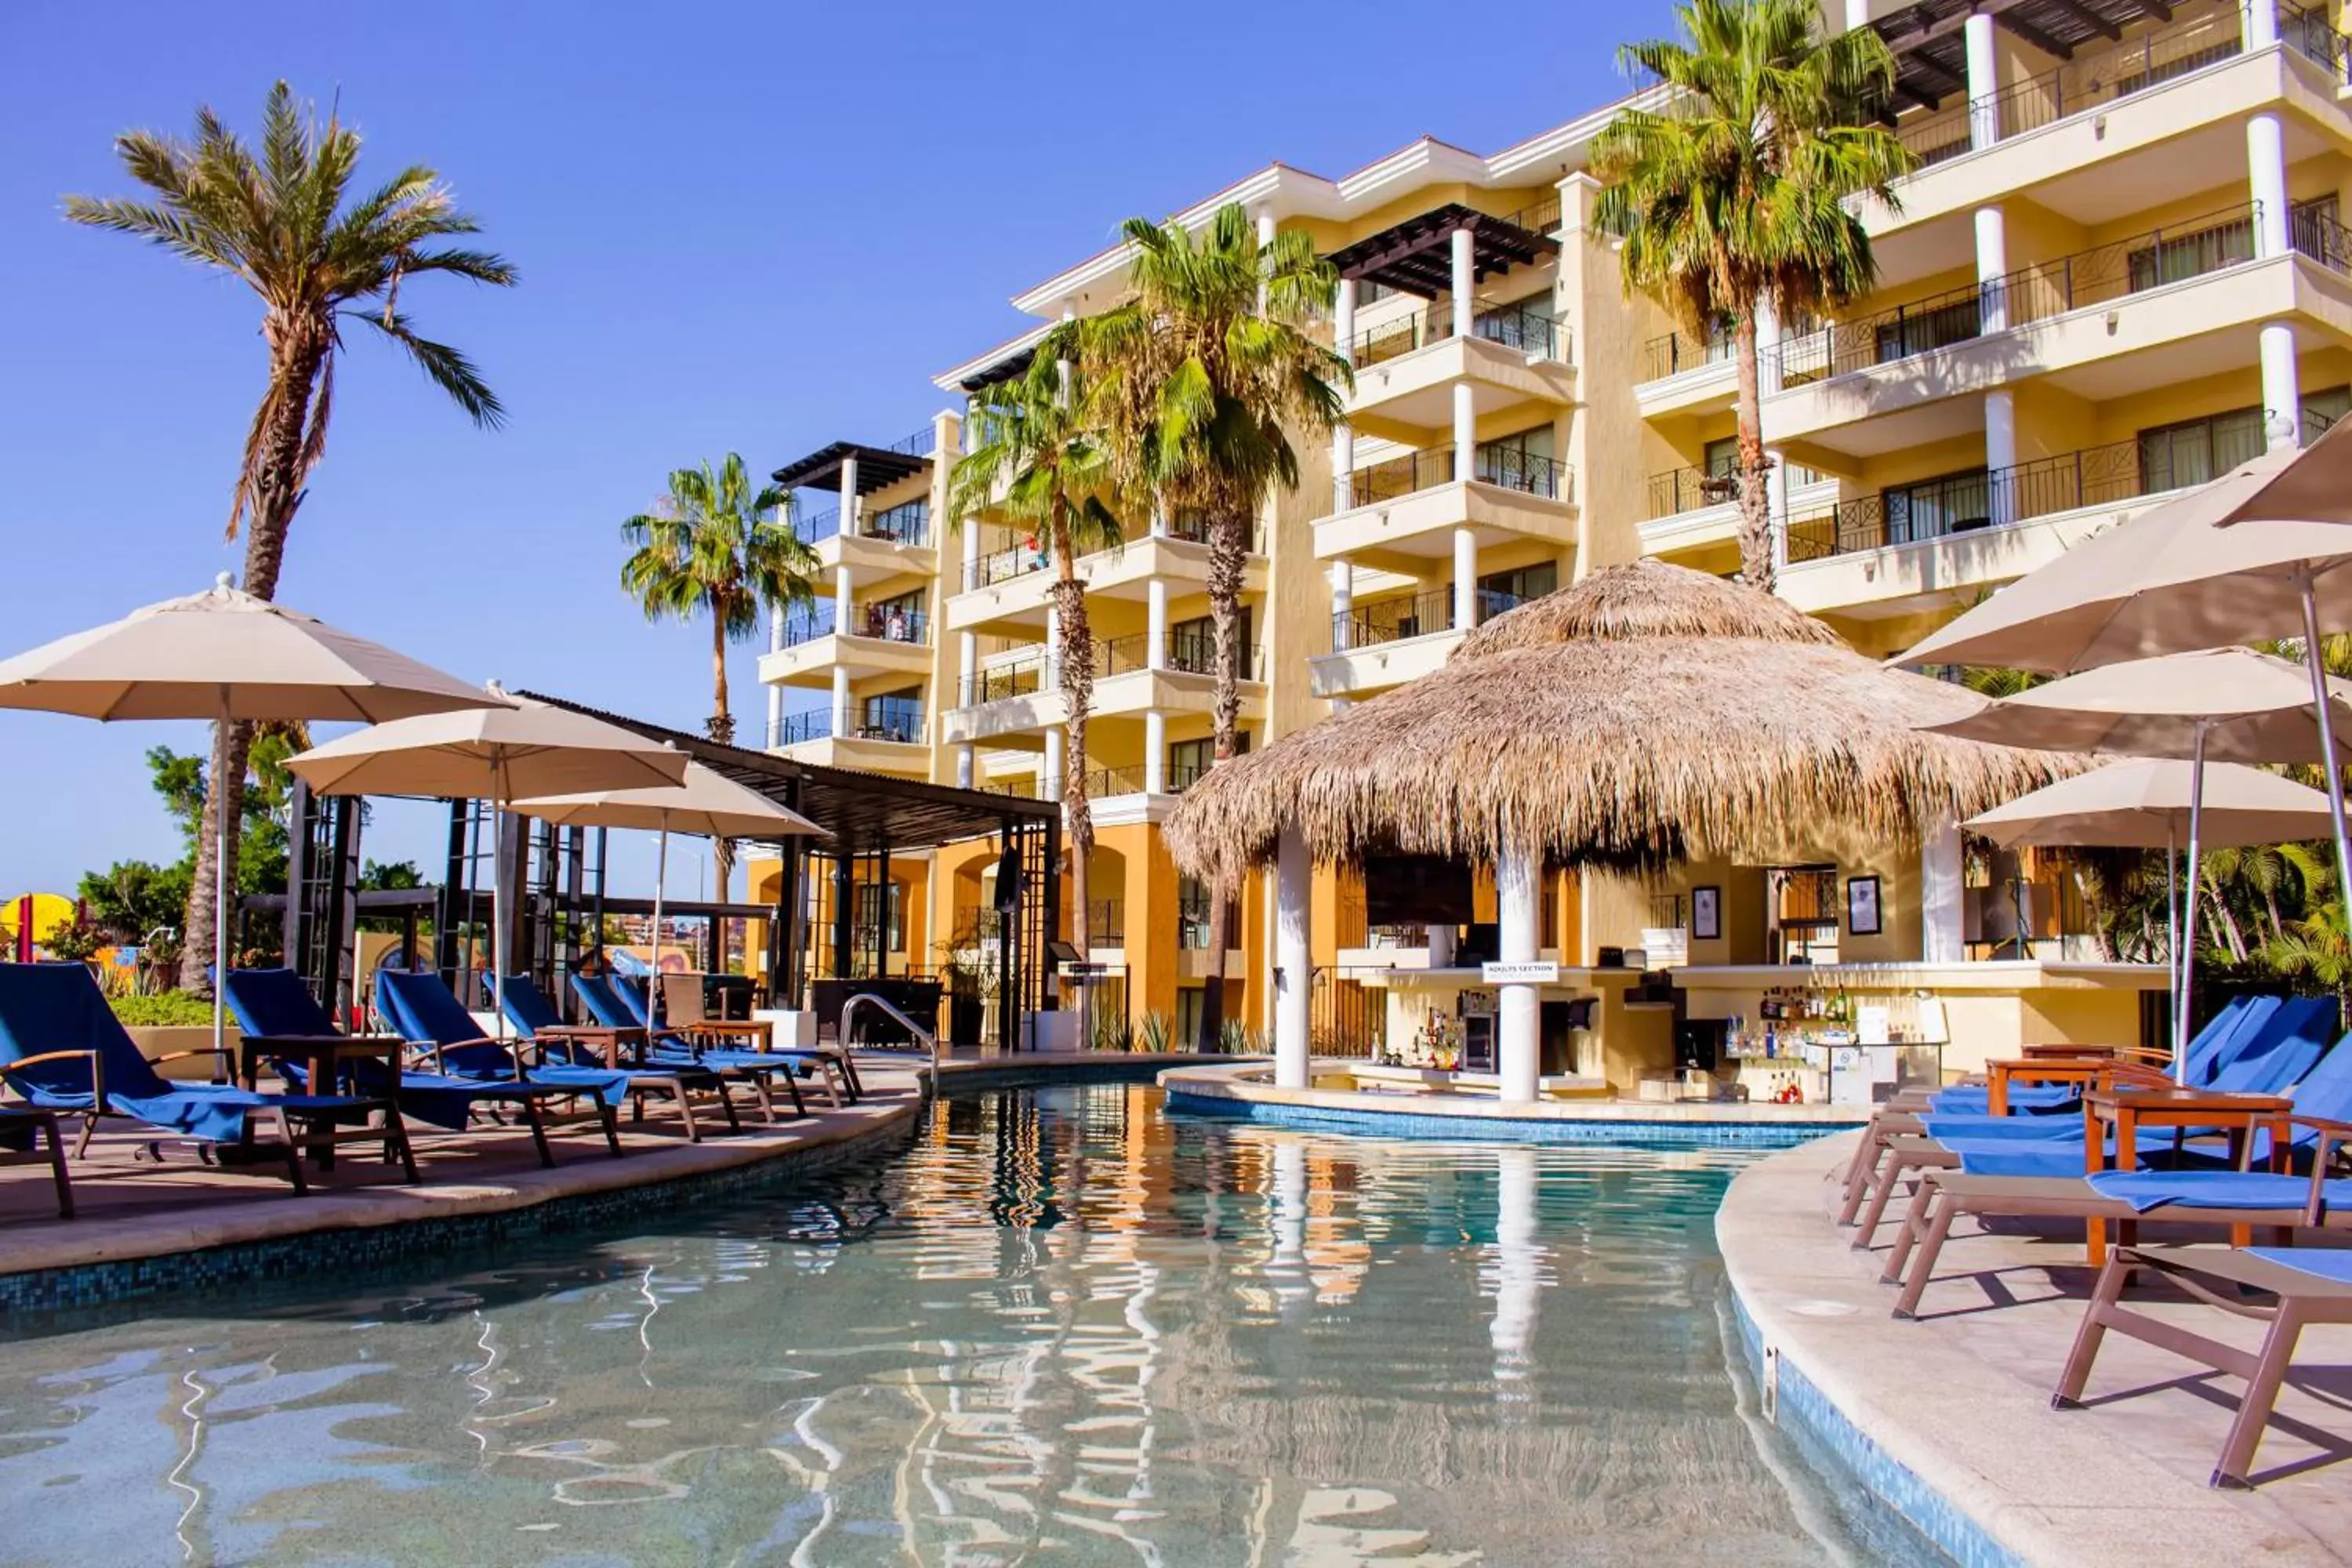 Property building, Swimming Pool in Casa Dorada Los Cabos Resort & Spa